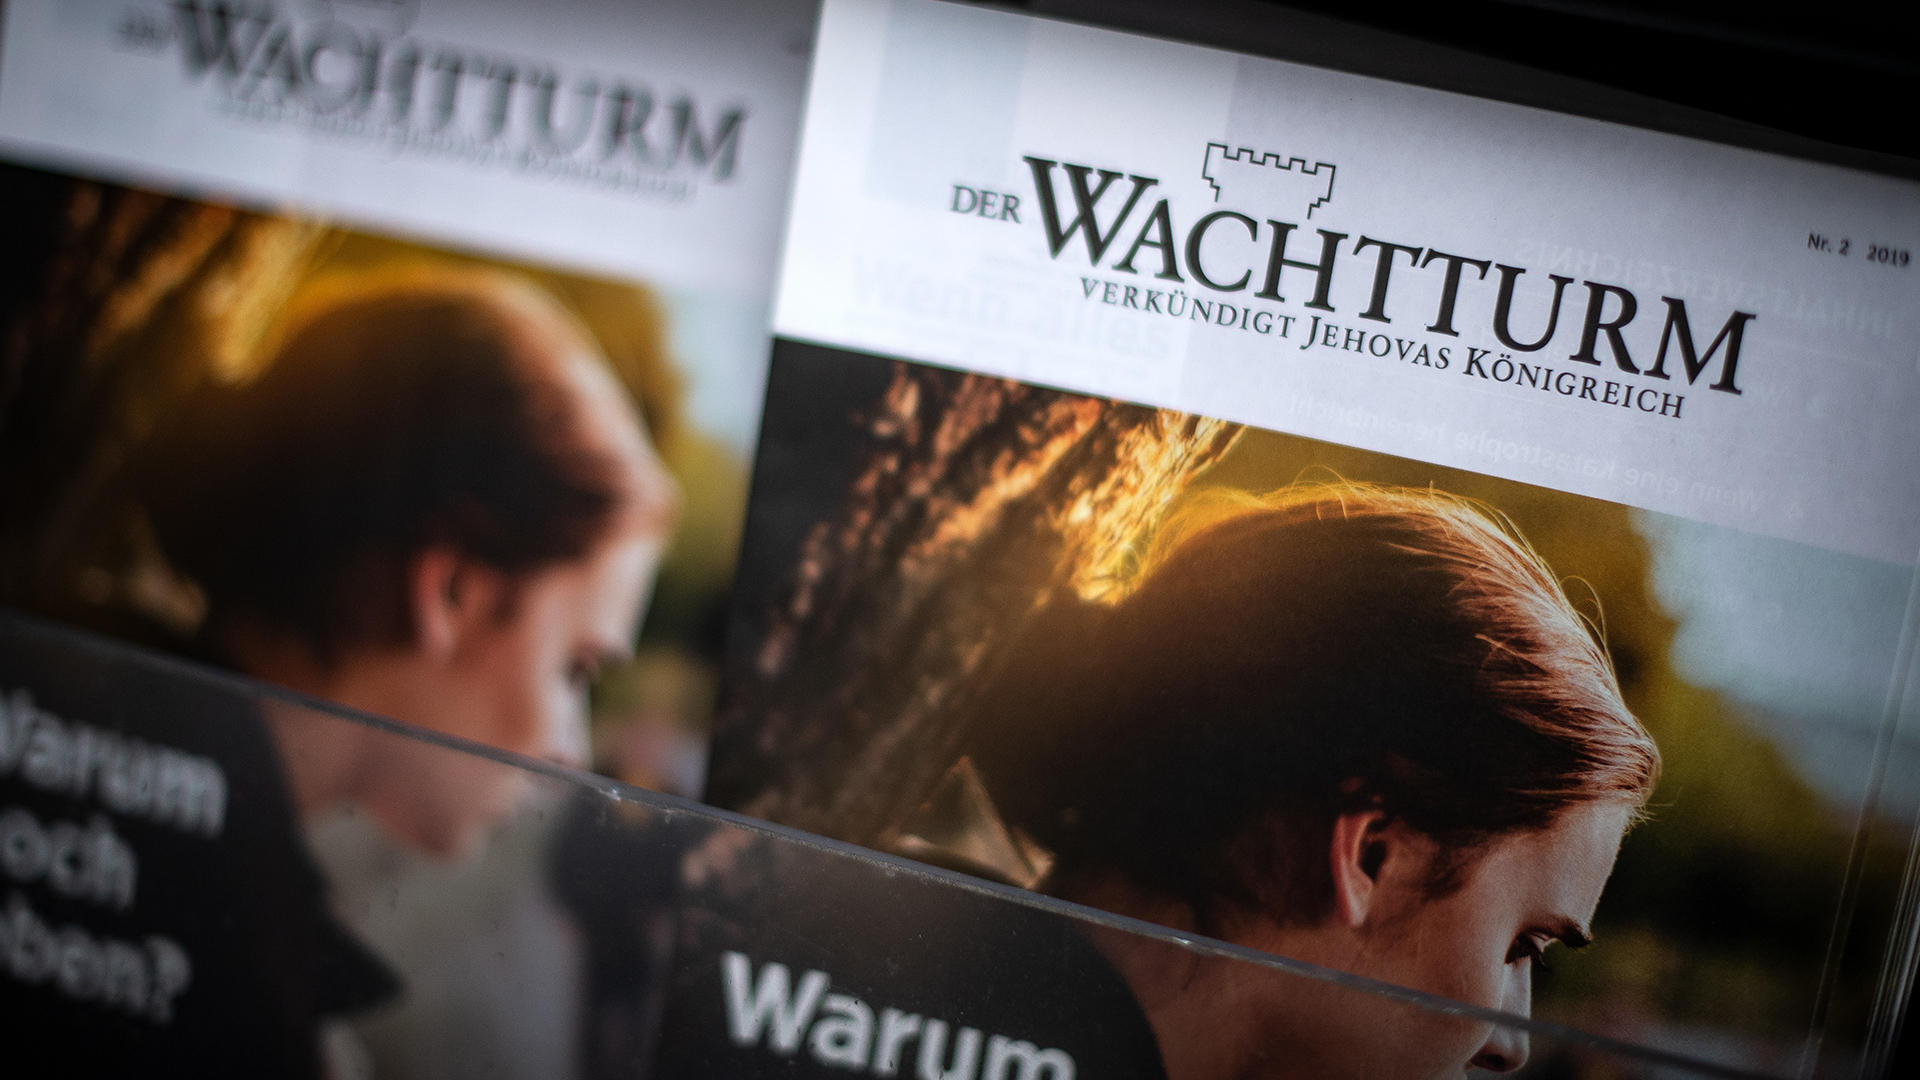 Zeitschrift "Wachtturm" der Zeugen Jehovas | picture alliance/dpa